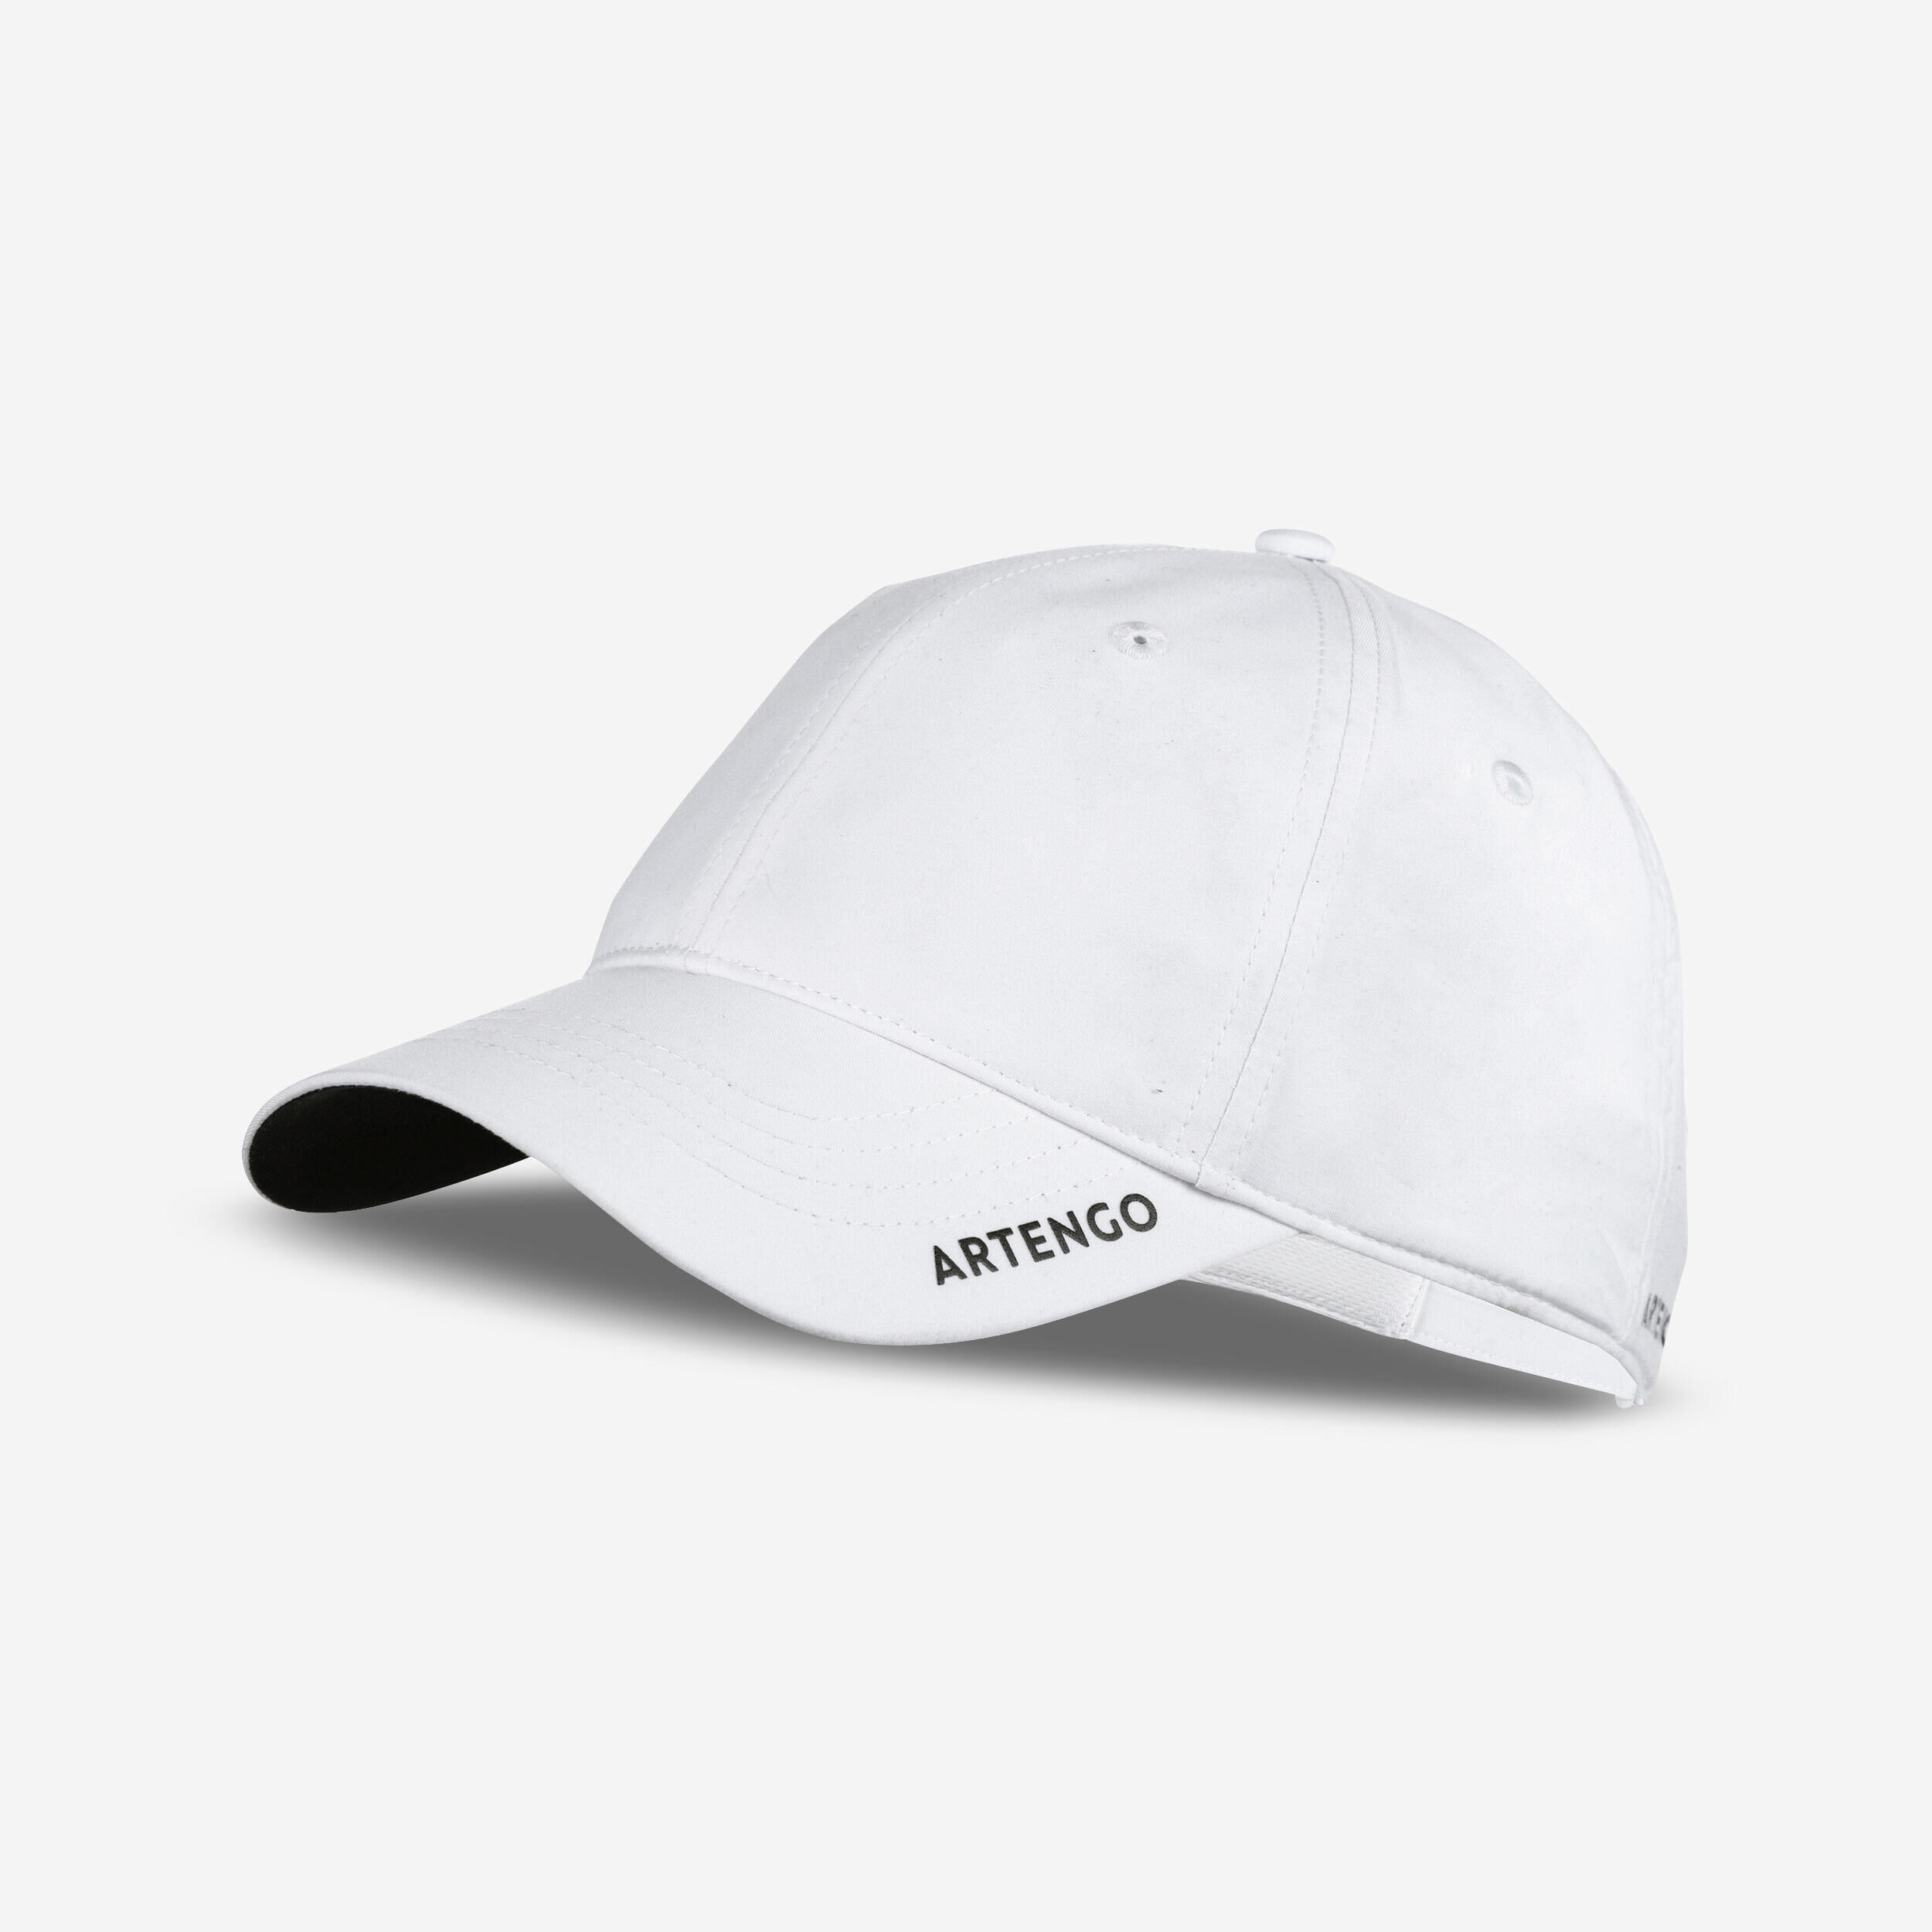 ARTENGO 58 cm Tennis Cap TC 500 - White